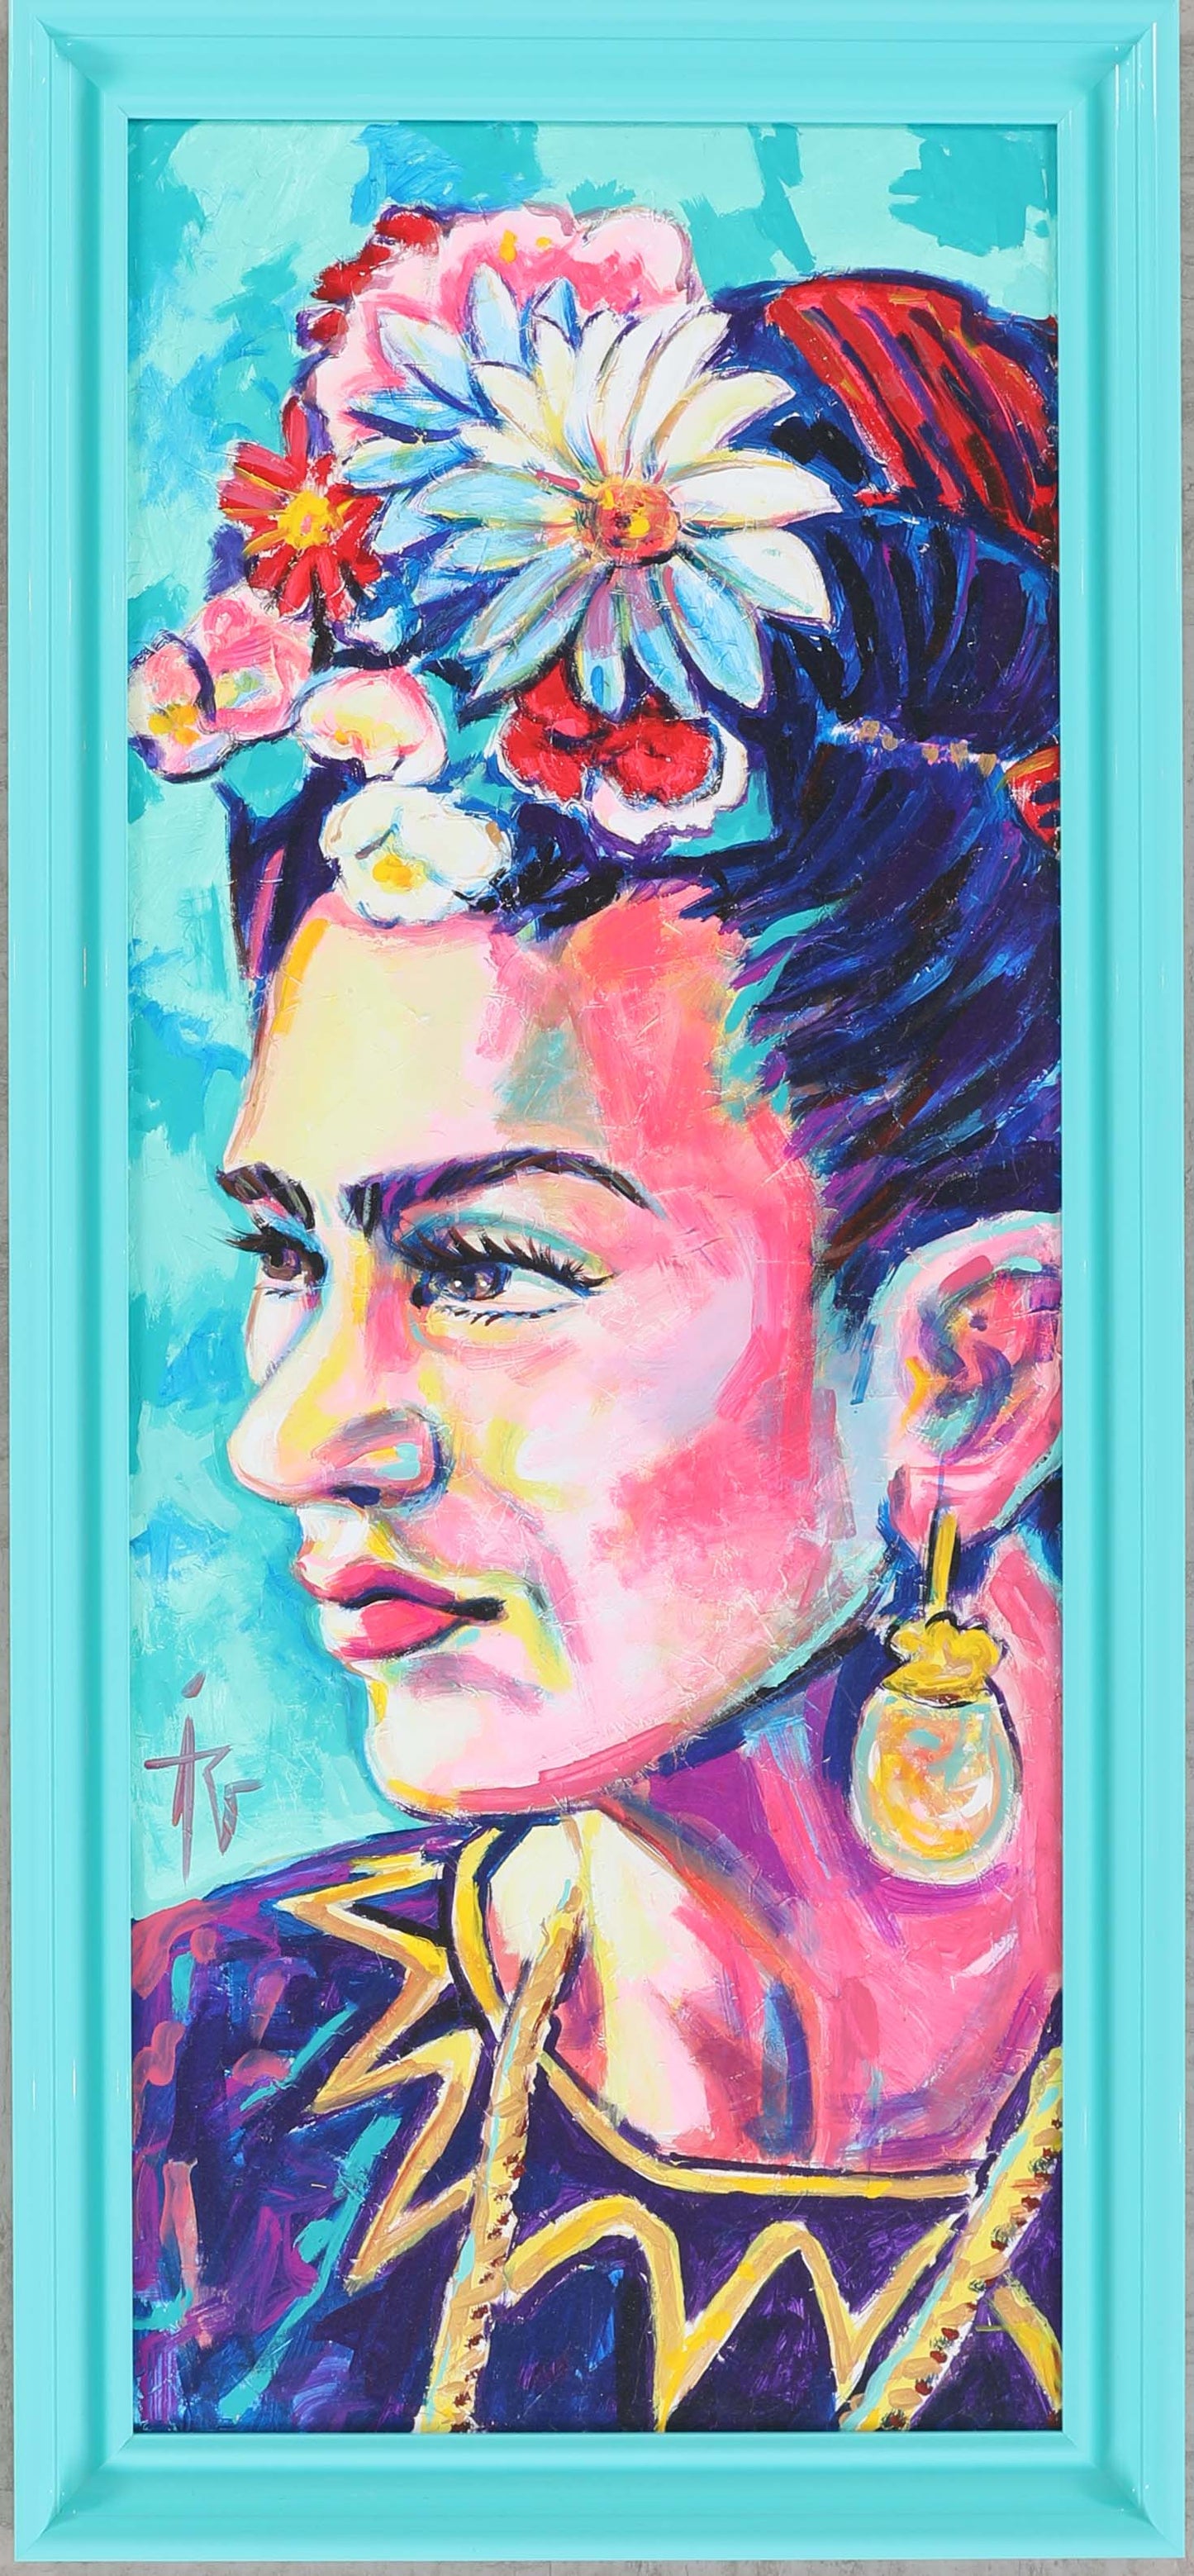 Frida Kahlo Framed Portrait. Mexican Art product image #27864127242410